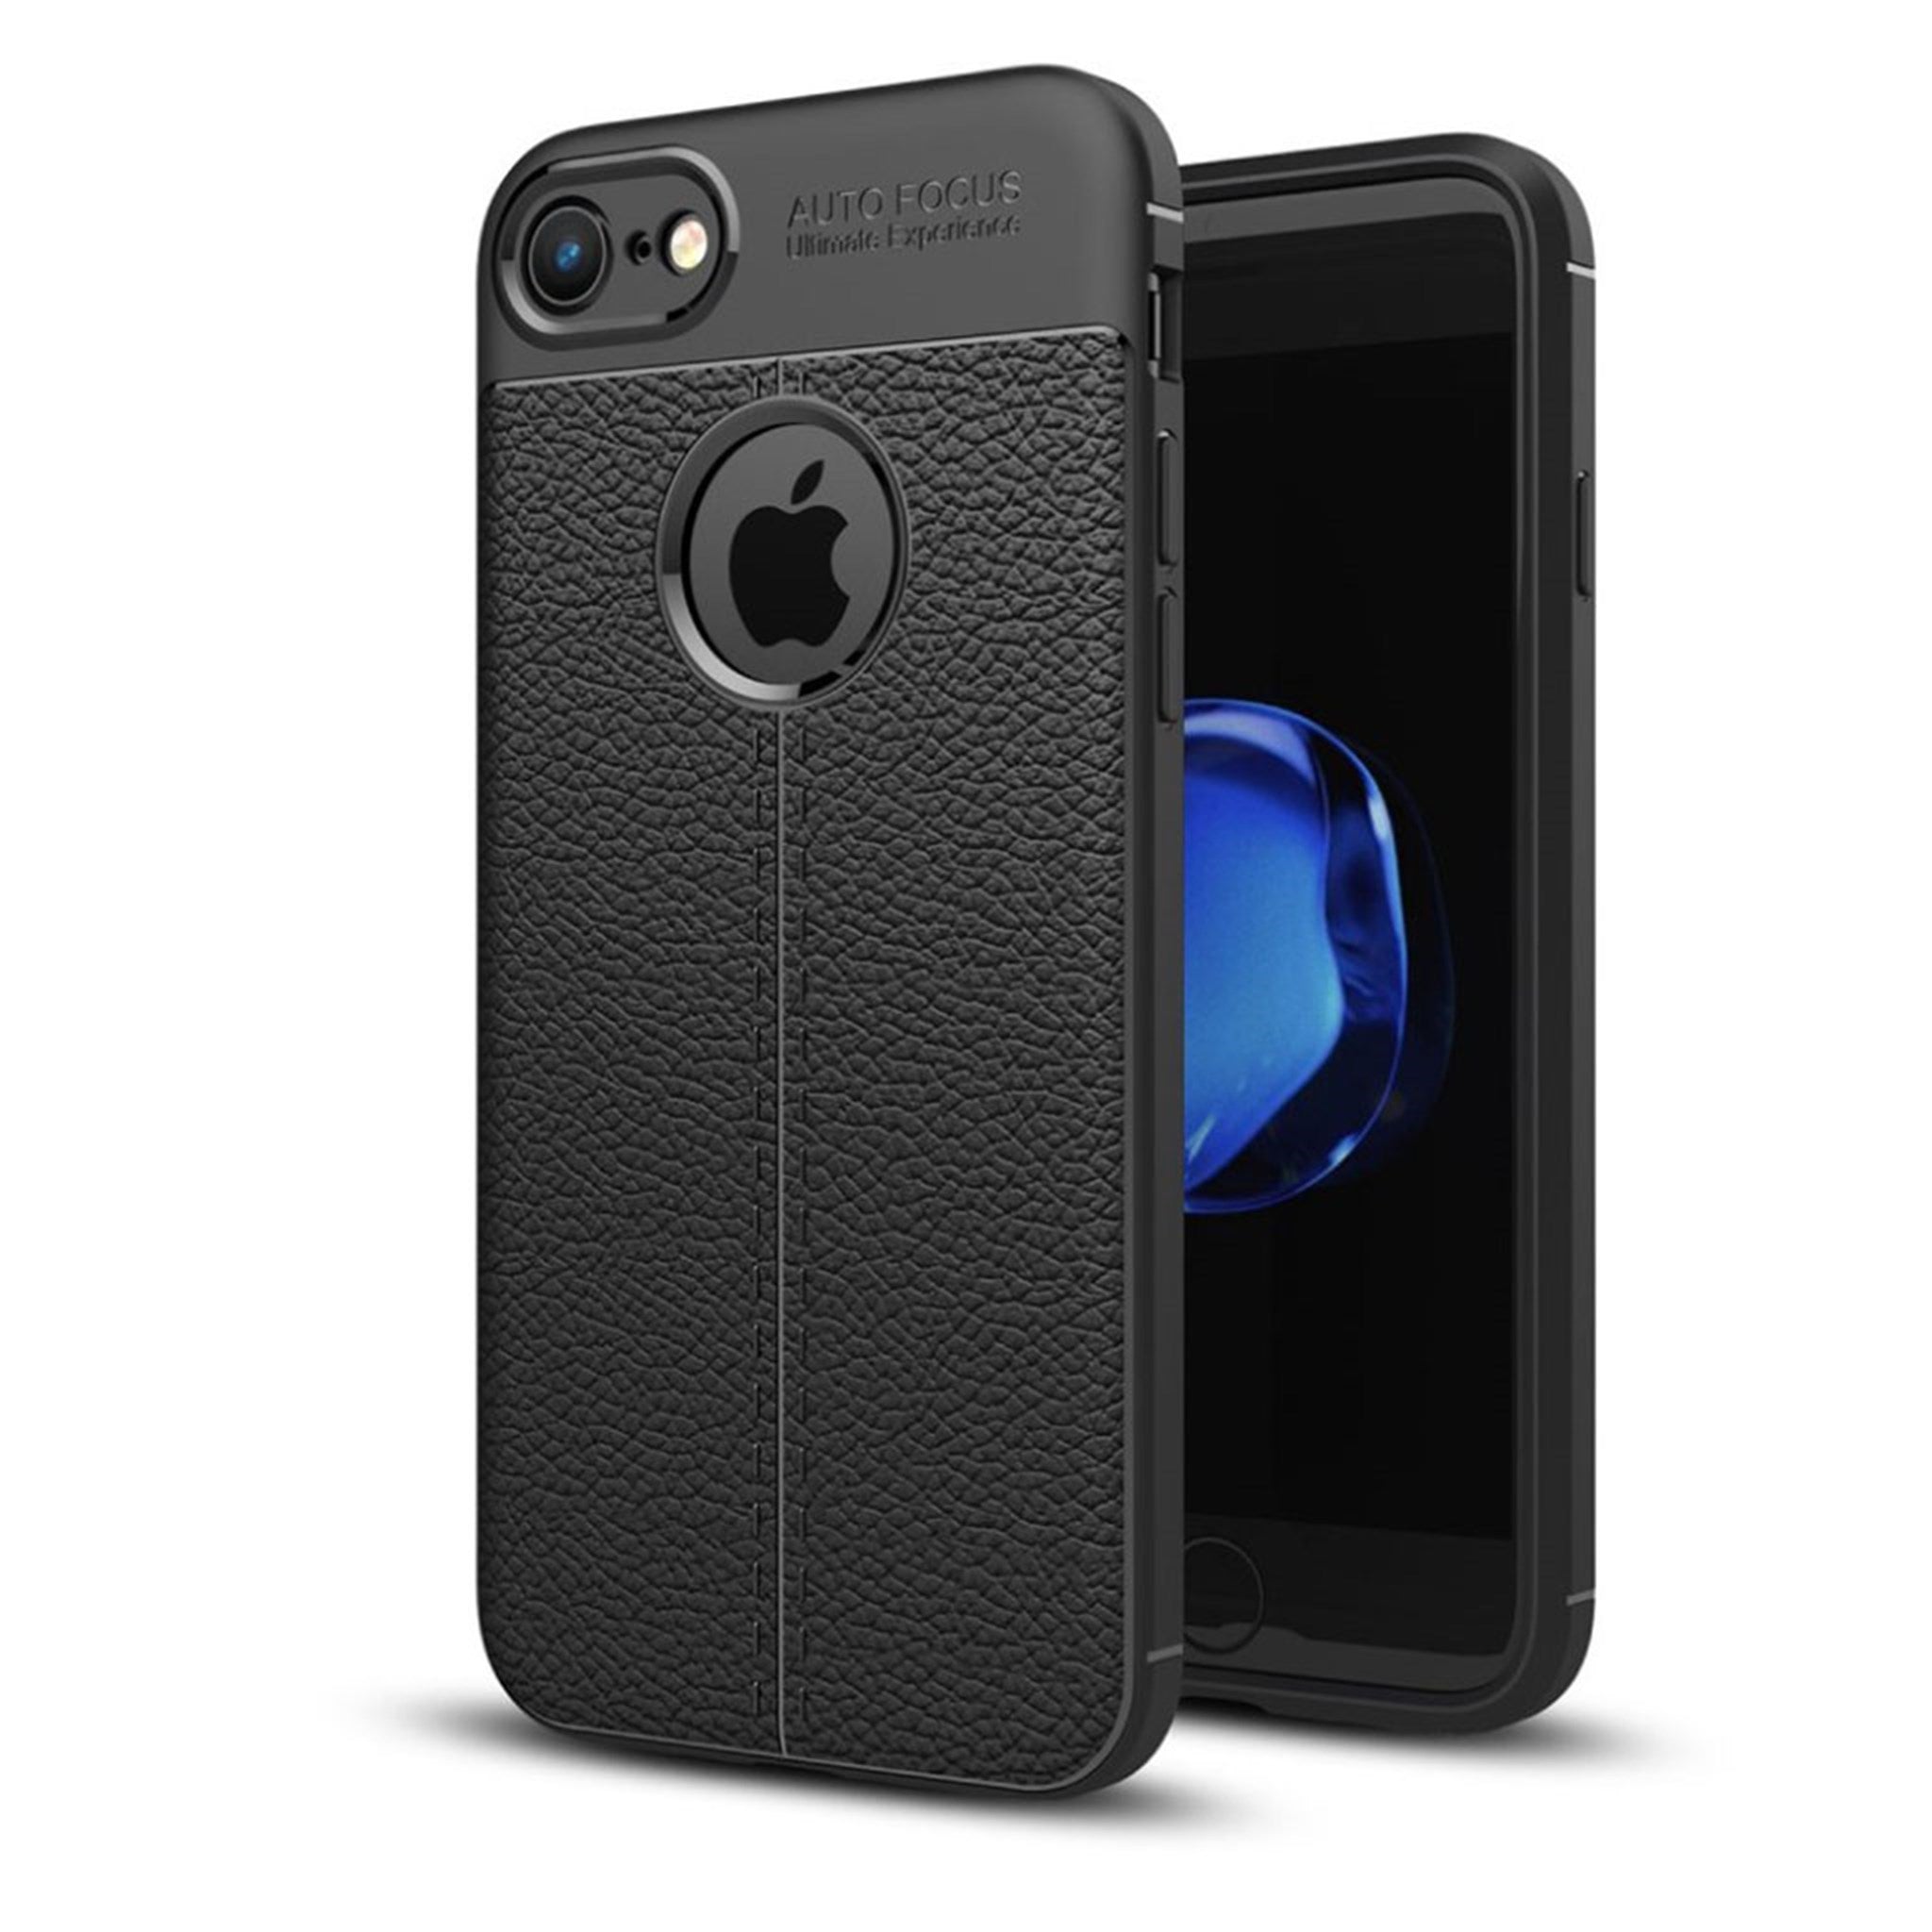 iPhone 7 / 8 litchi texture soft TPU case - Black